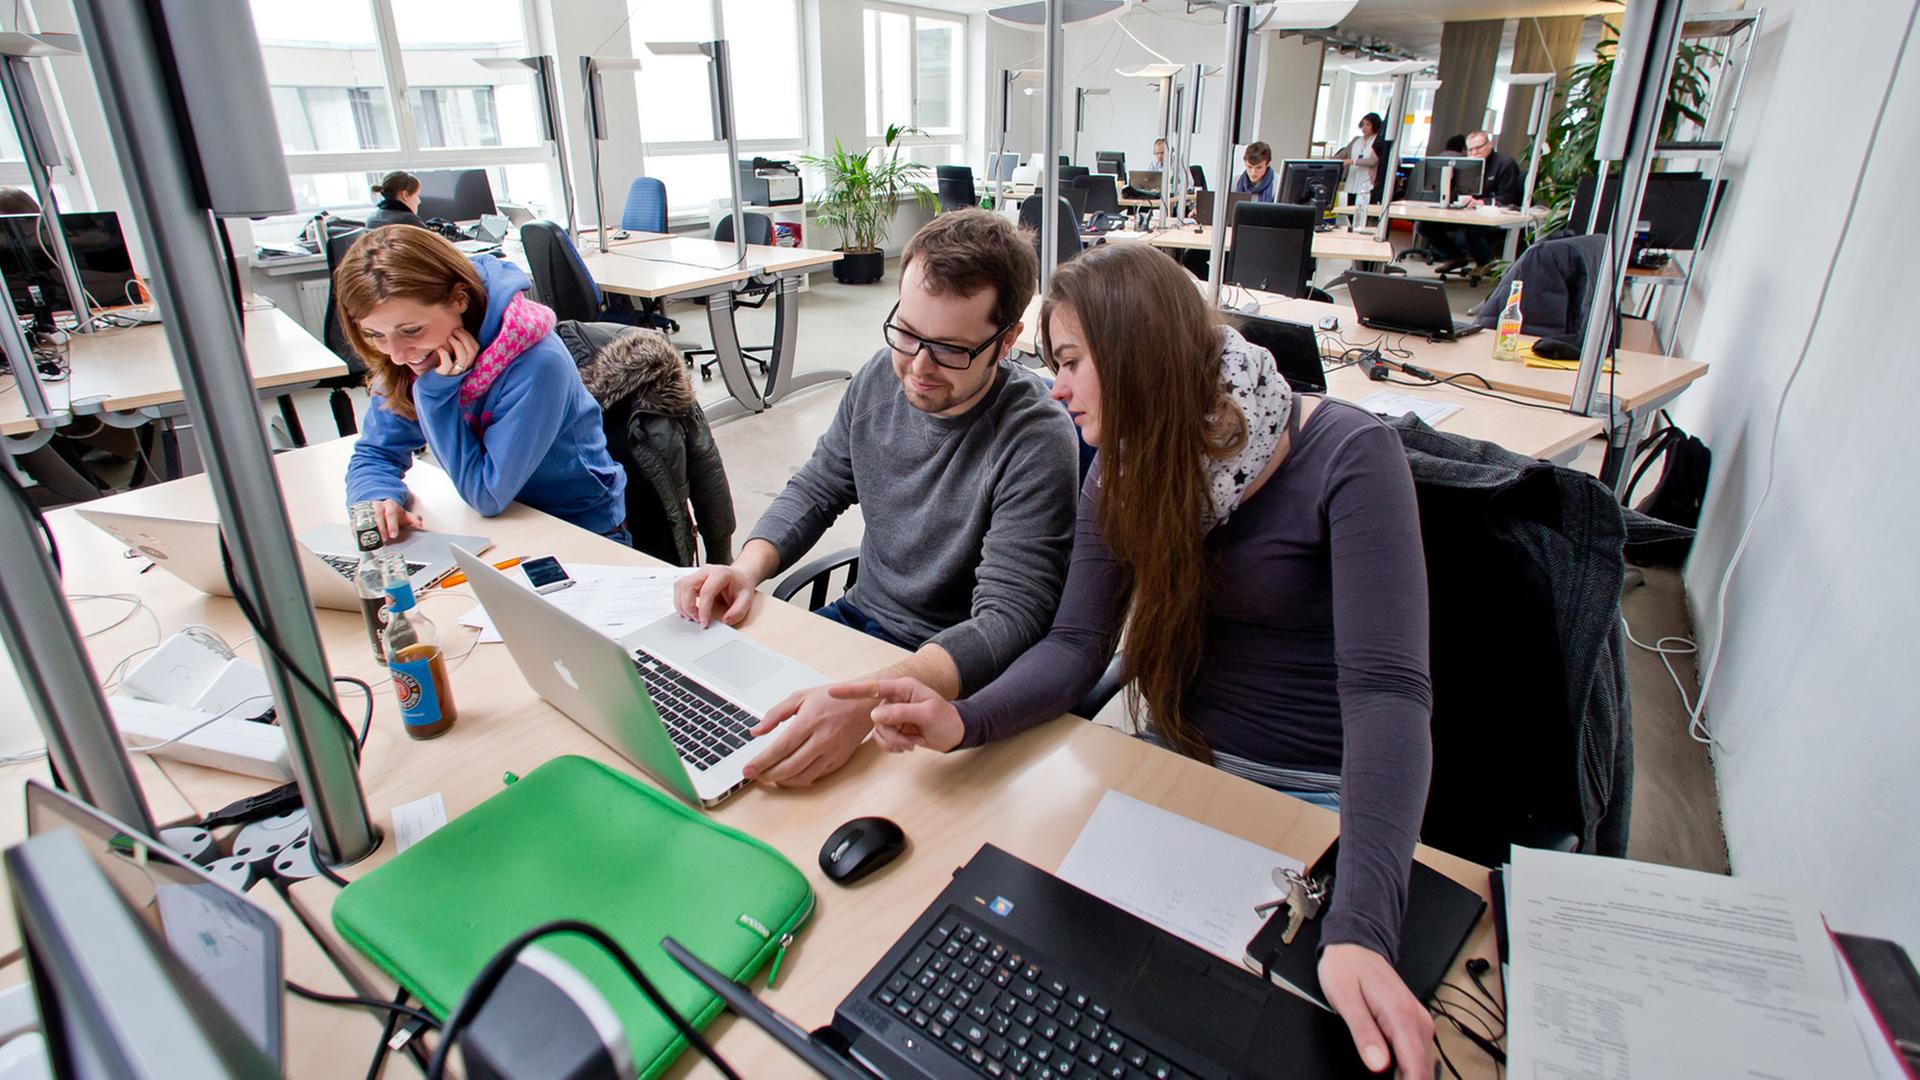 Blick in die Gemeinschaftsbüros "Coworking Spaces" am 04.04.2013 in Nürnberg: In einem Großraumbüro arbeiten mehrere Personen an Computern.